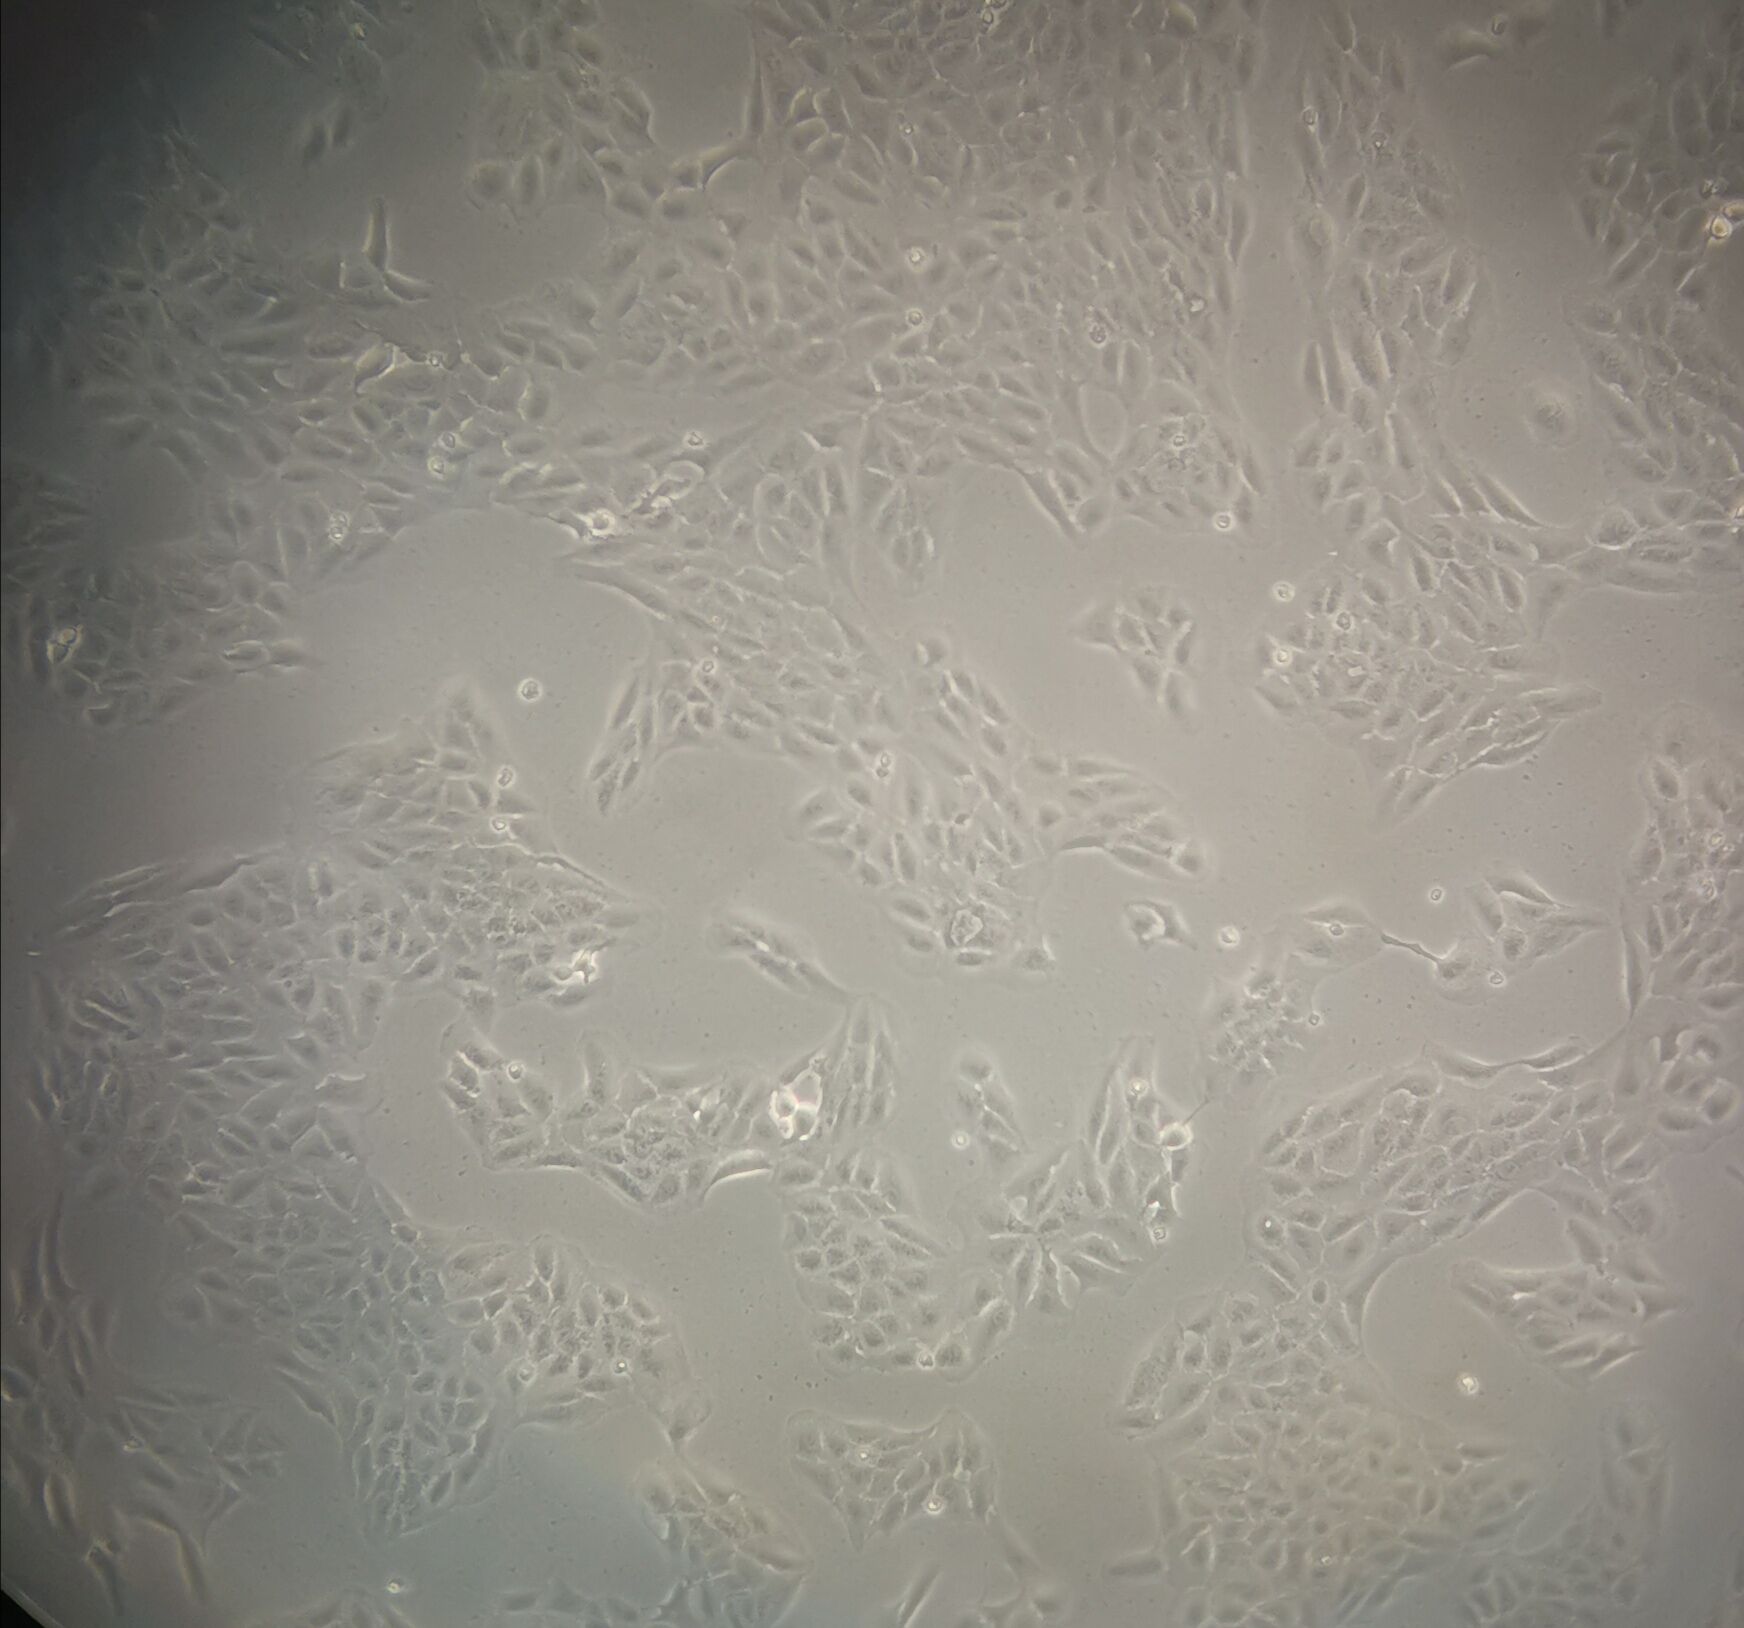 BPH-1 Cells|人前列腺增生克隆细胞